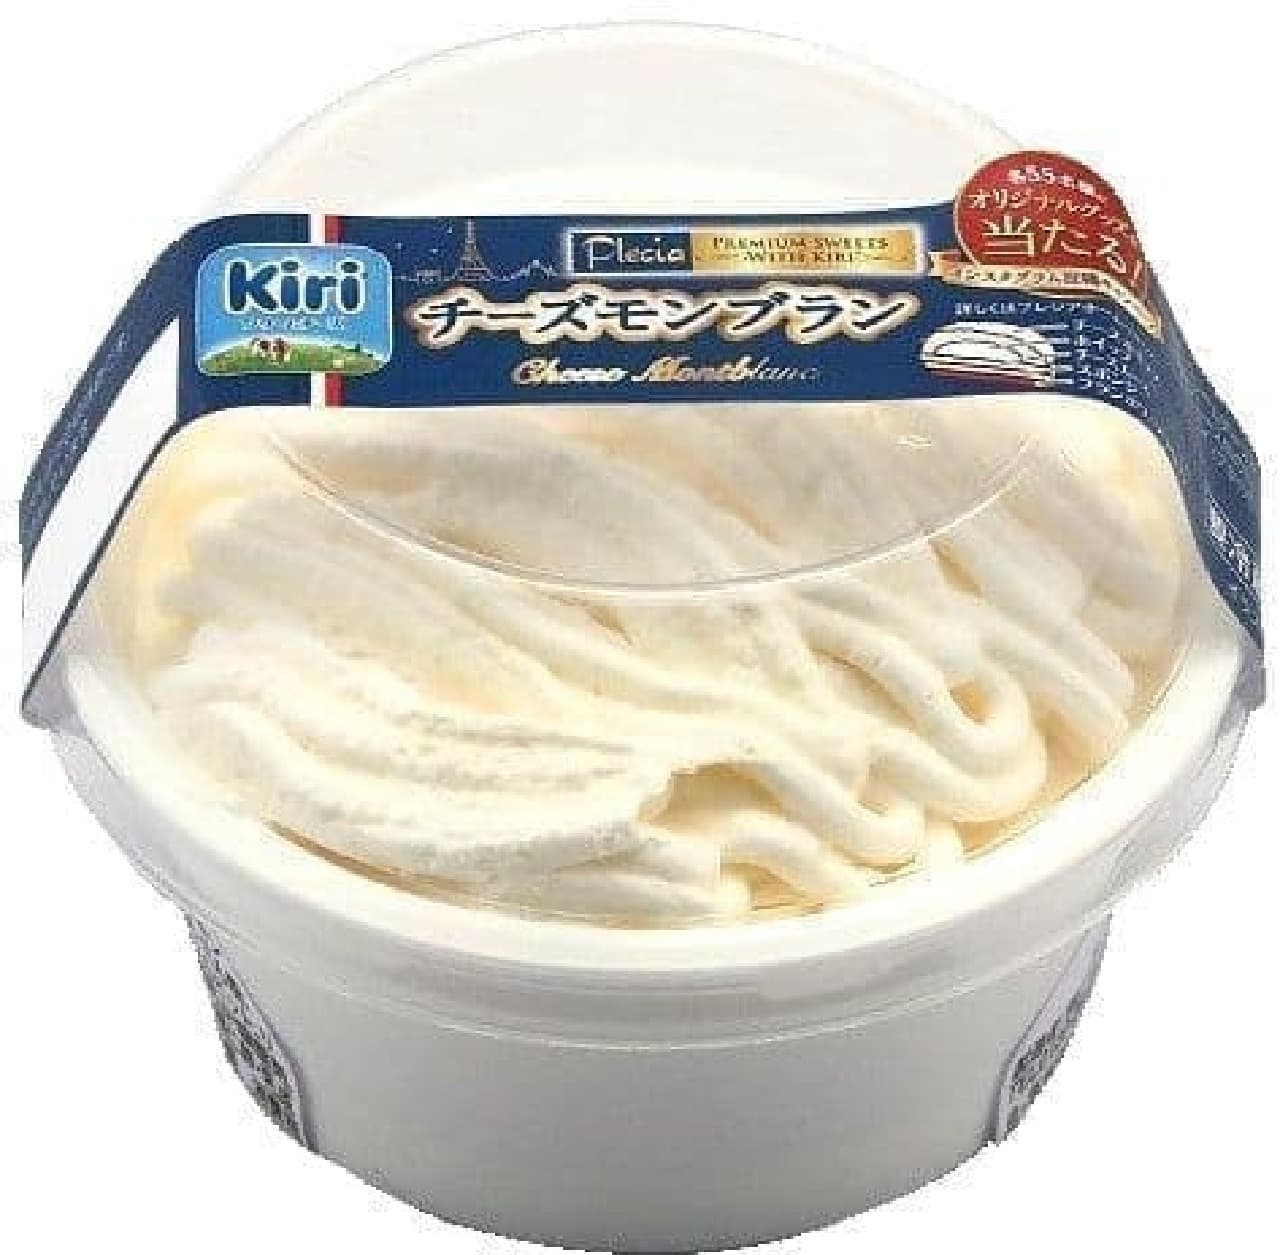 "Cheese Mont Blanc" using Kiri cream cheese